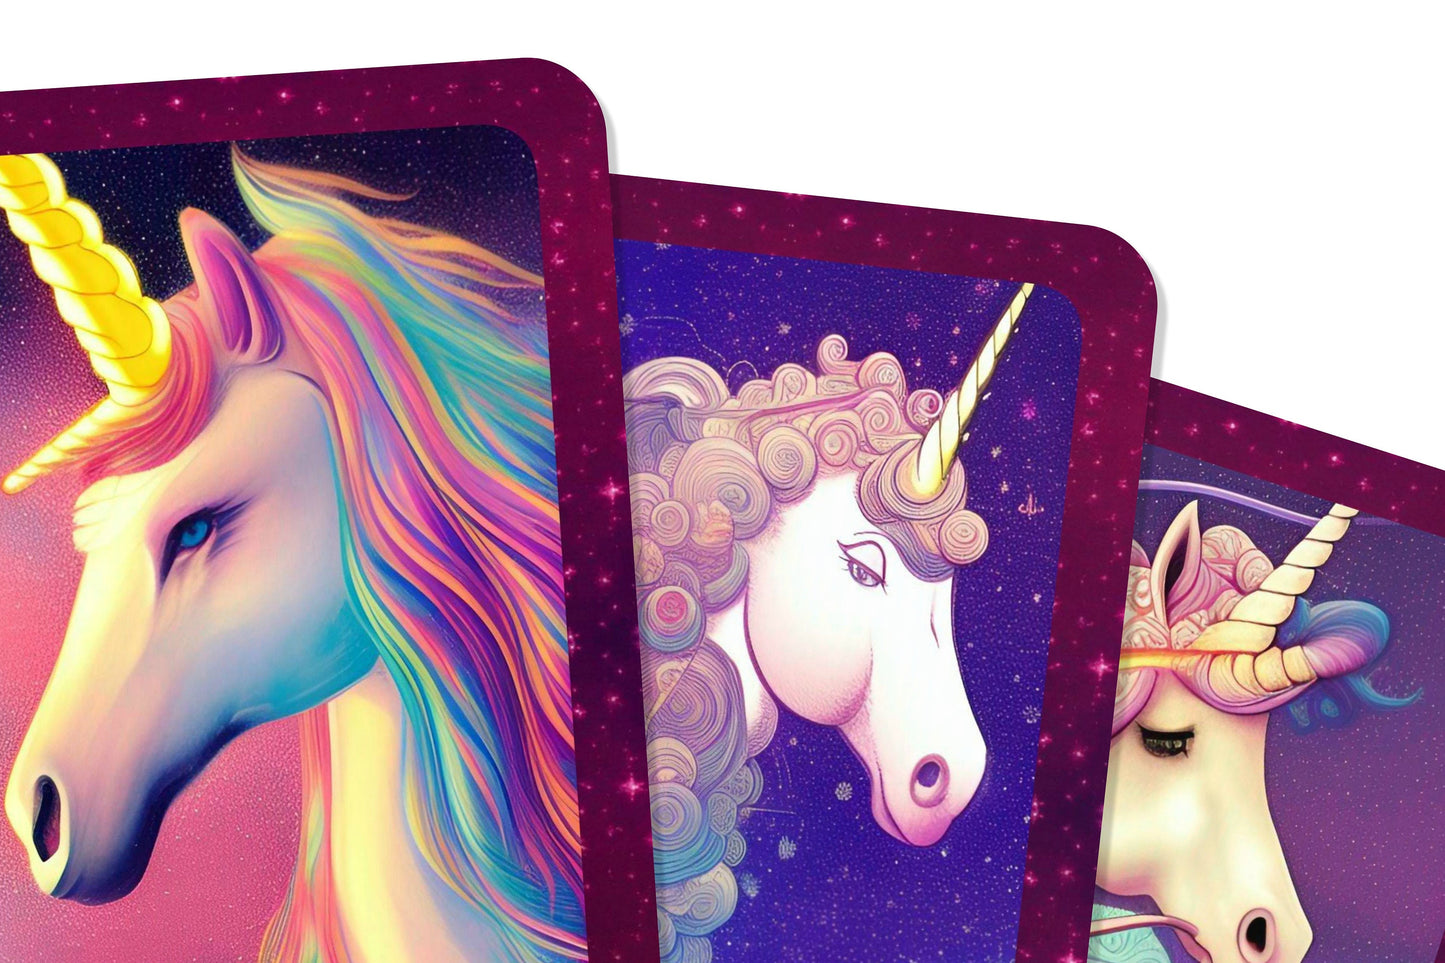 The Unemployed Unicorn Affirmation Cards - Unleash your inner unicorn, job or no job - Affirmation Cards - Affirmation cards - Divination